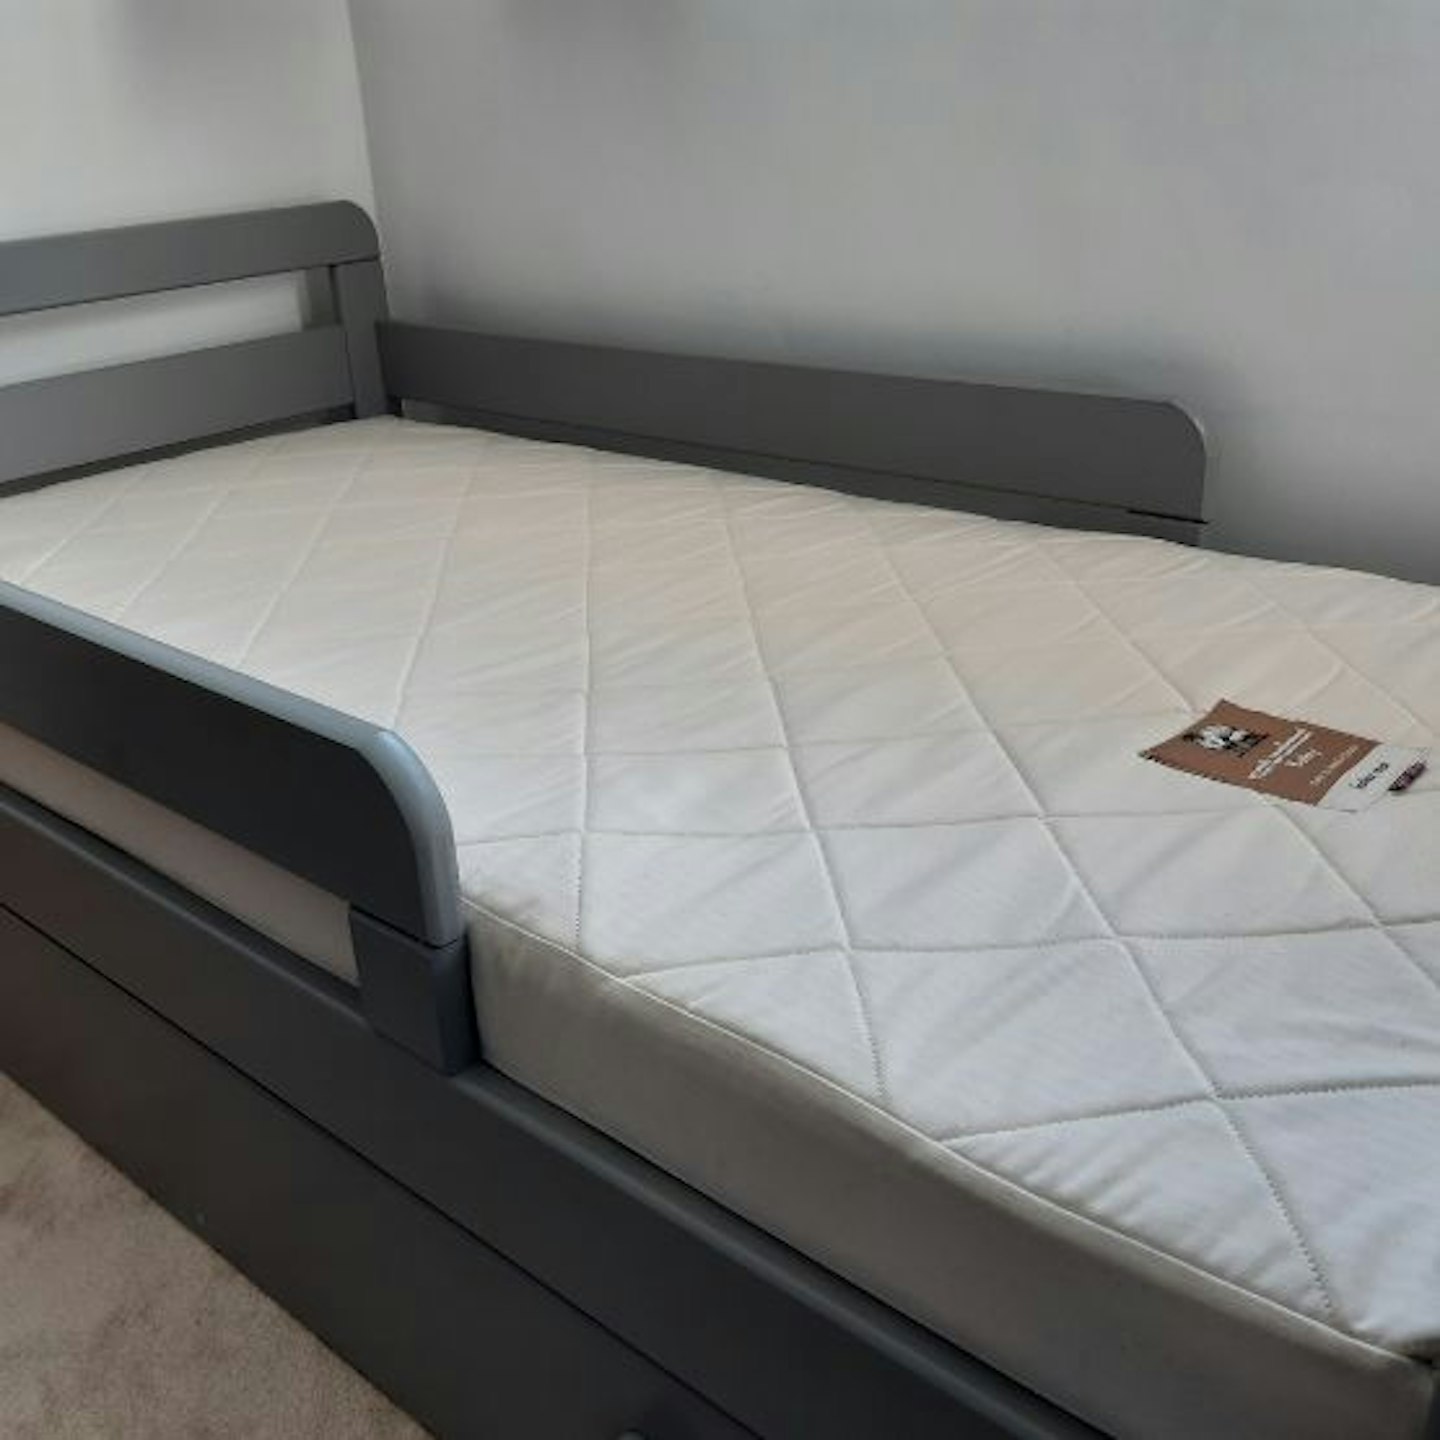 Naturalmat Quilted Latex Cot Bed Mattress